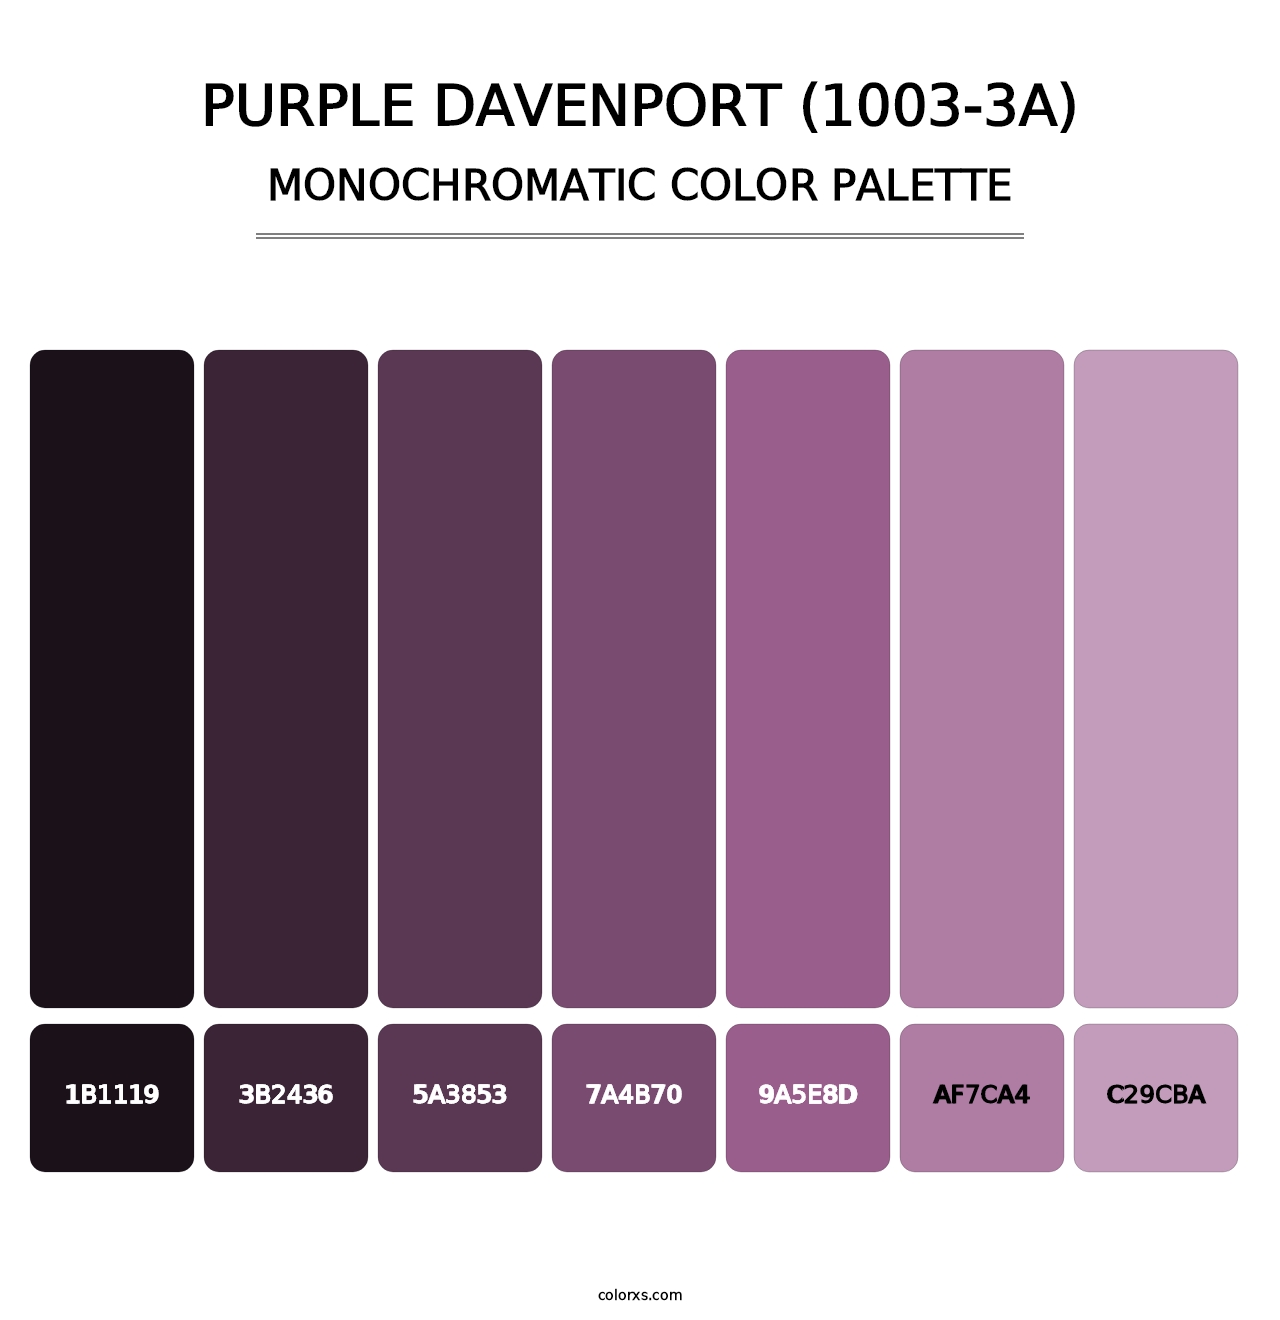 Purple Davenport (1003-3A) - Monochromatic Color Palette